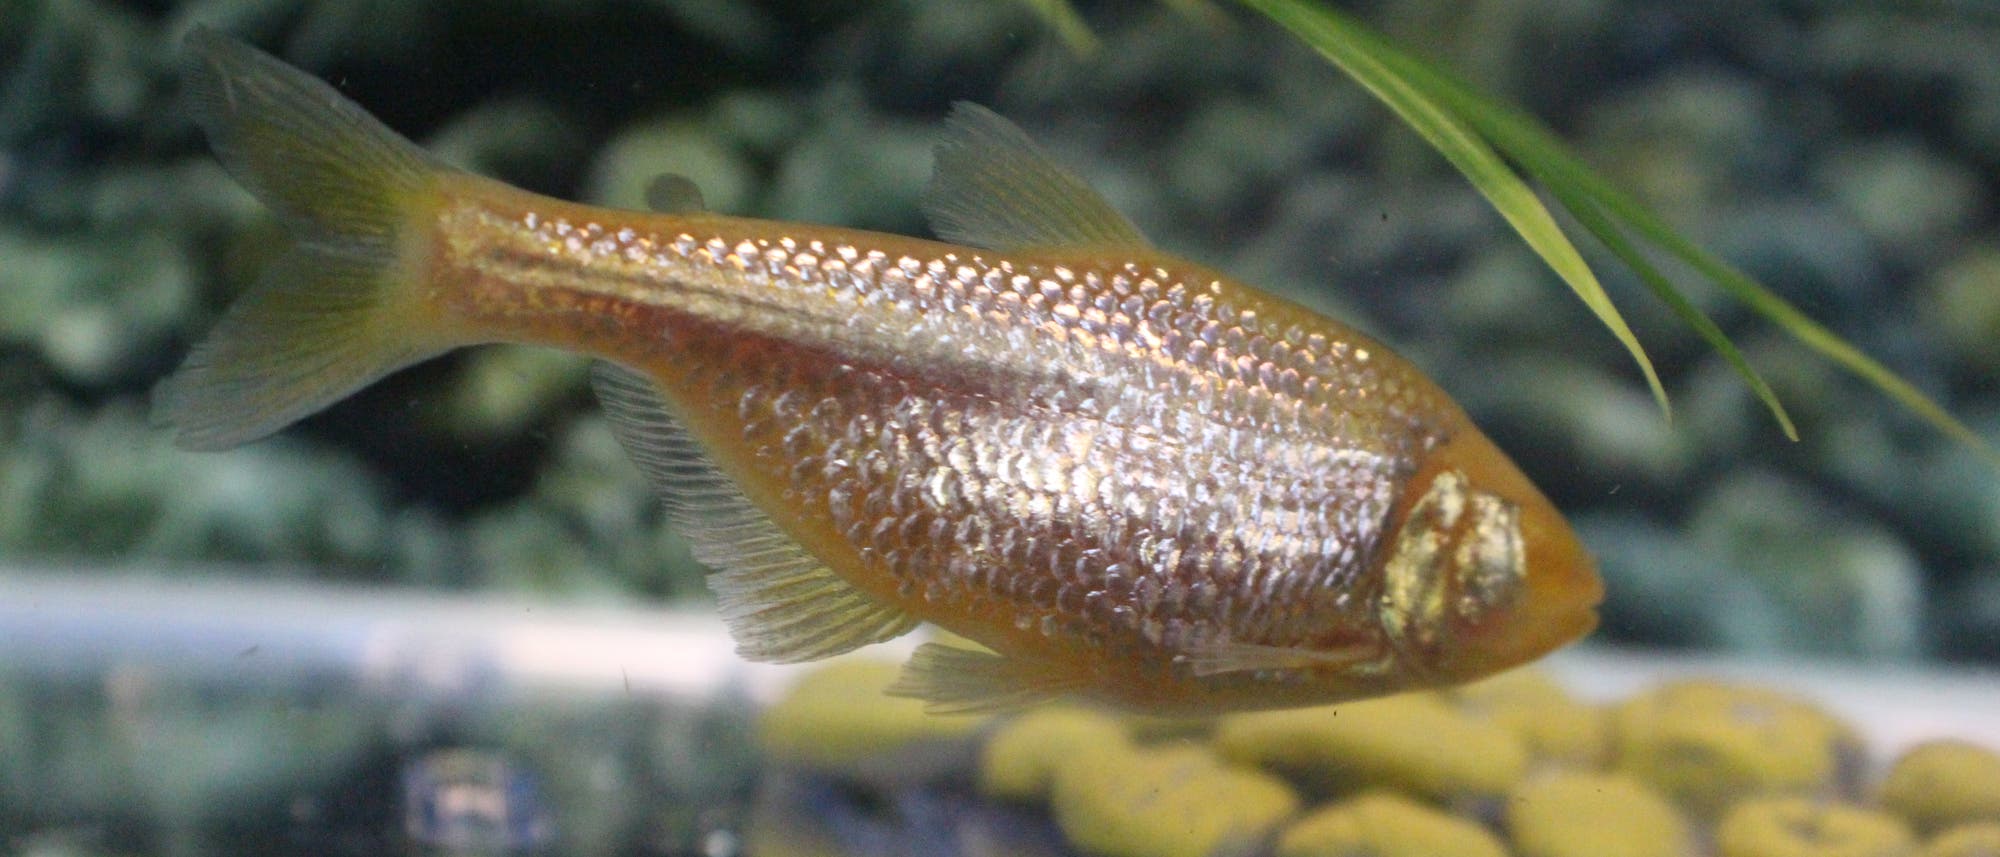 Höhlenfisch der Art Astyanax mexicanus